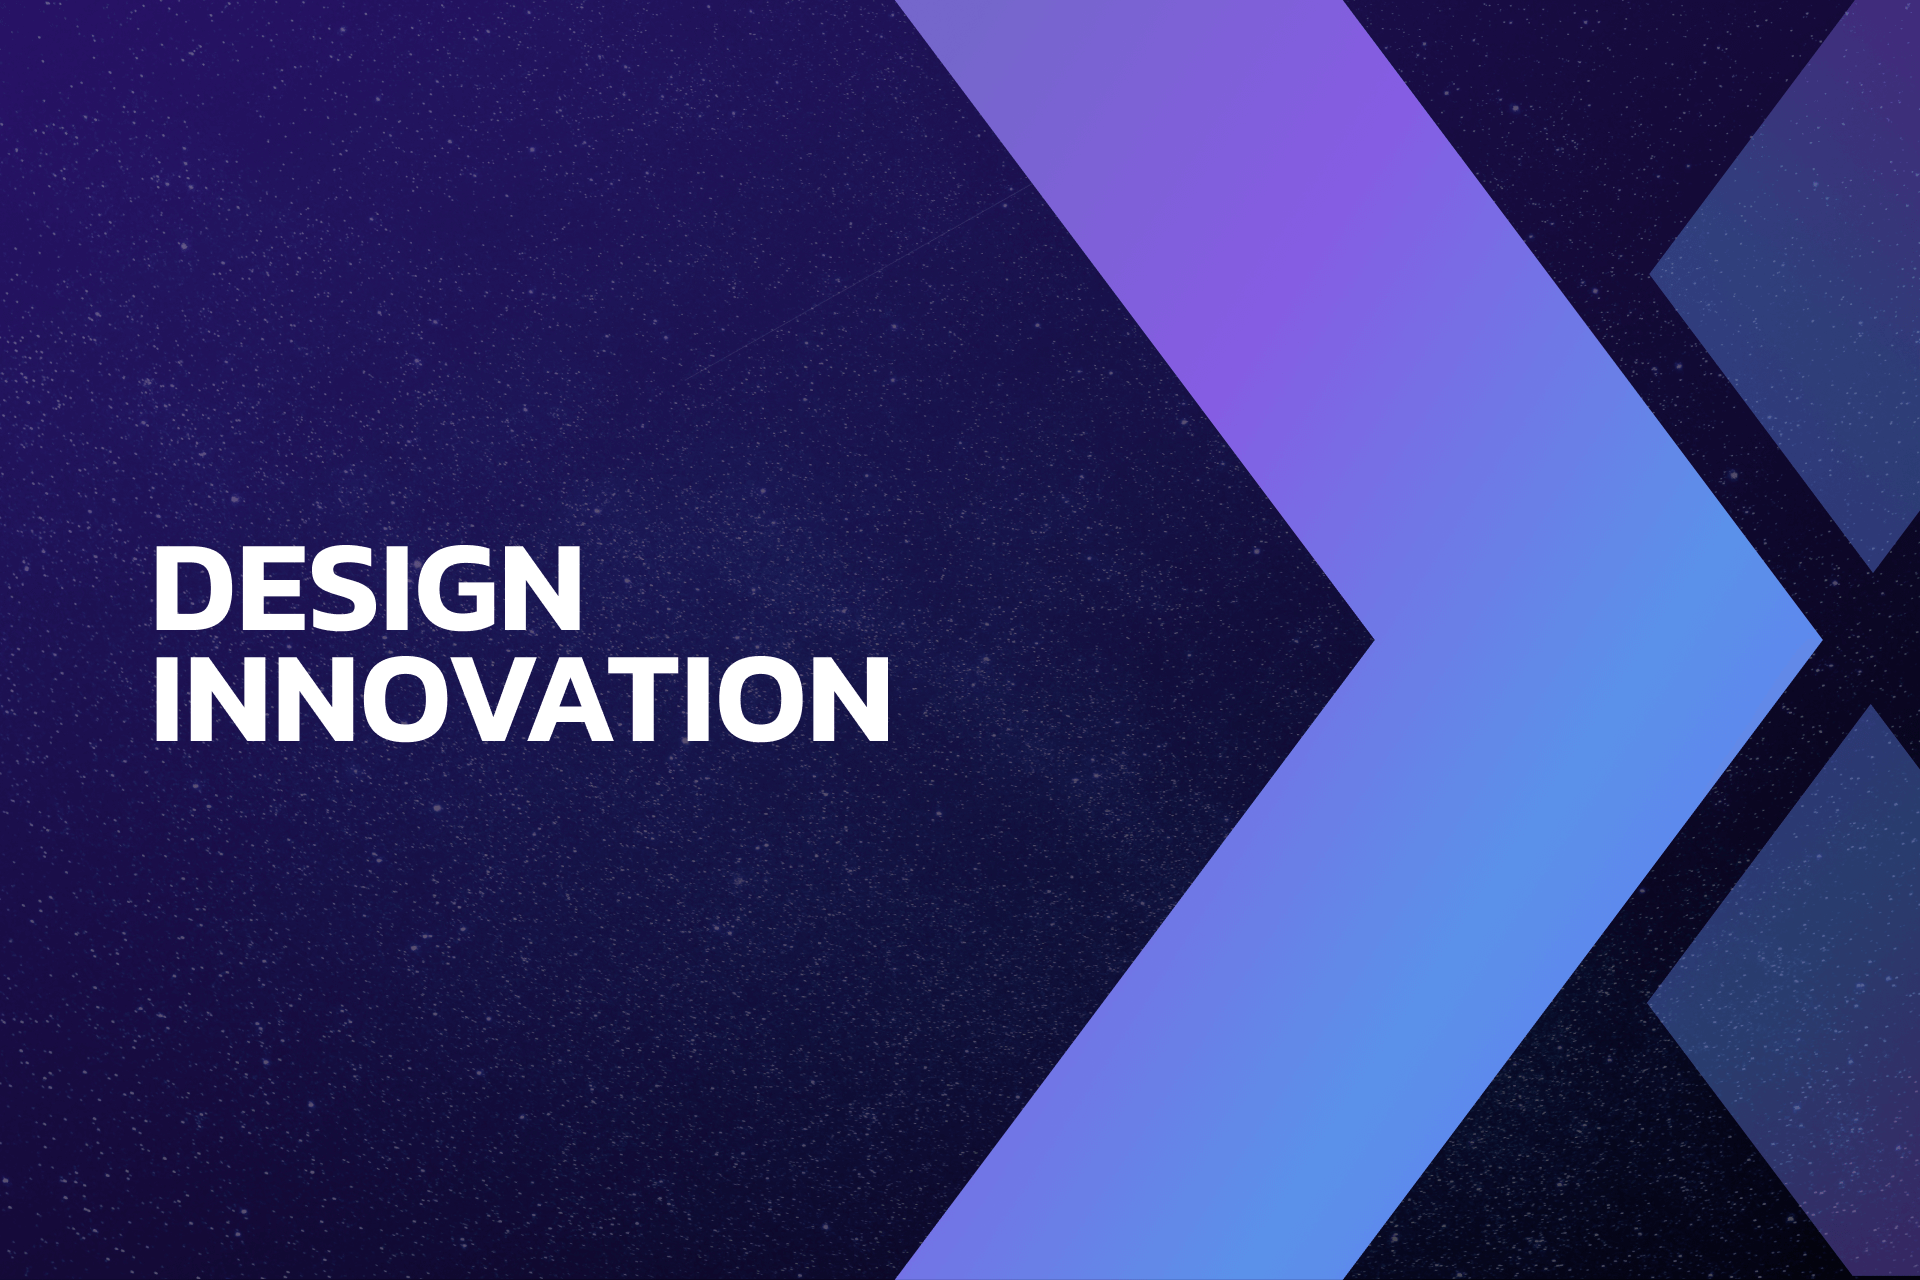 Design innovation